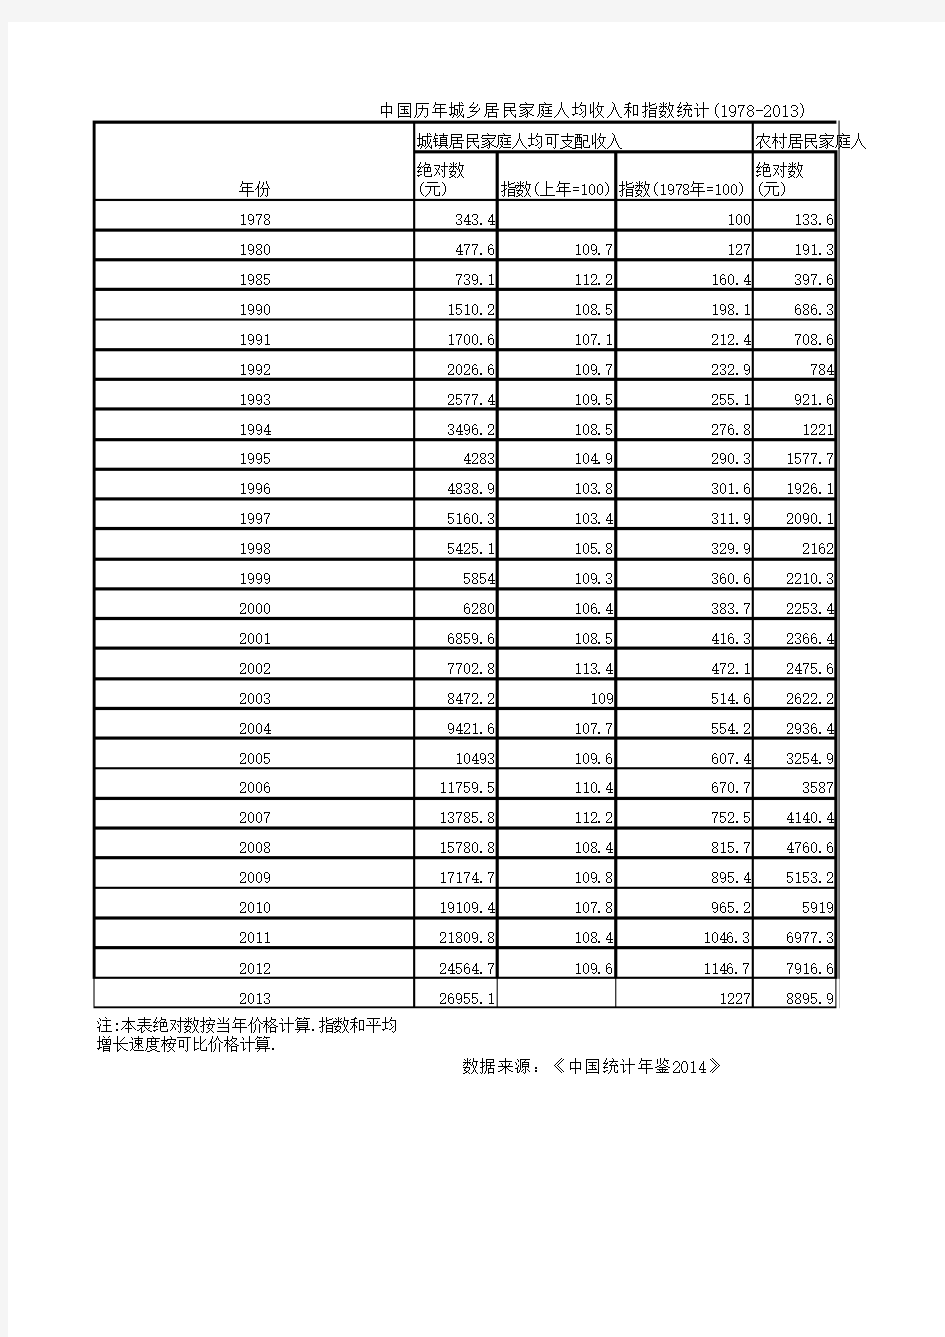 中国历年城乡居民家庭人均收入和指数统计(1978-2013)